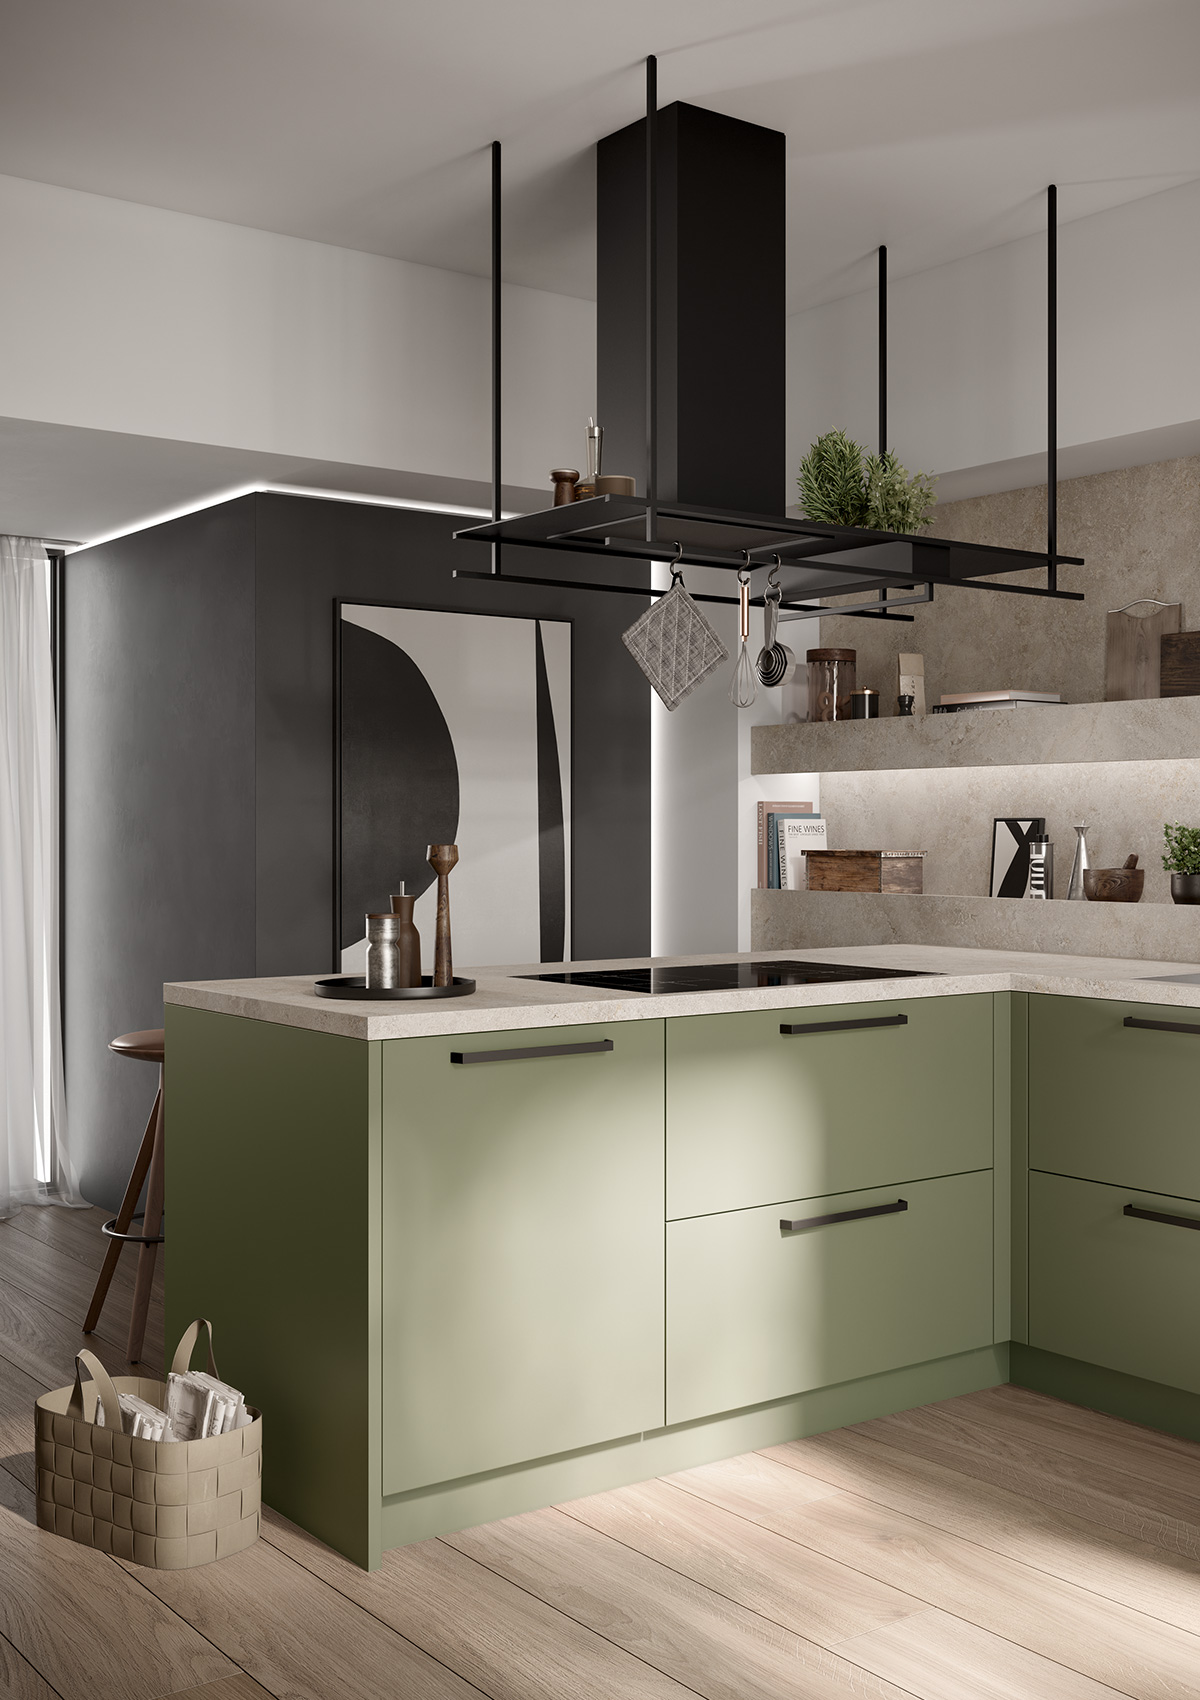 [Translate to Français:] Bild der Küchentheke der concept130 SCALA Olivgrün, darüber schwarze Dunstabzugshaube, im Vordergrund runder Esstisch mit Stühlen